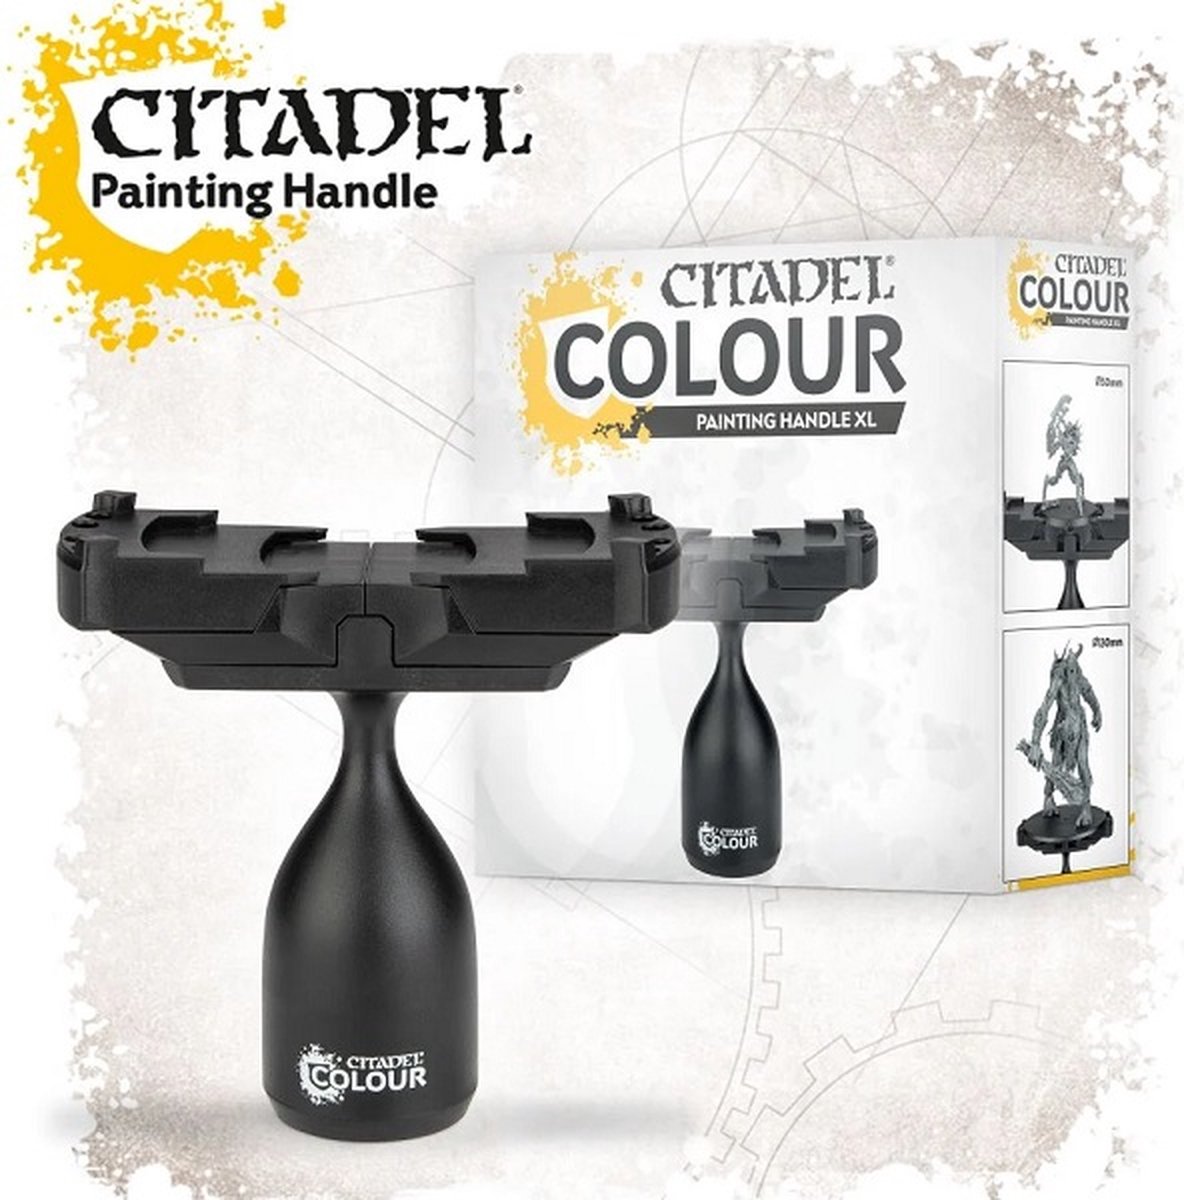 Citadel Painting Handle XL - Citadel